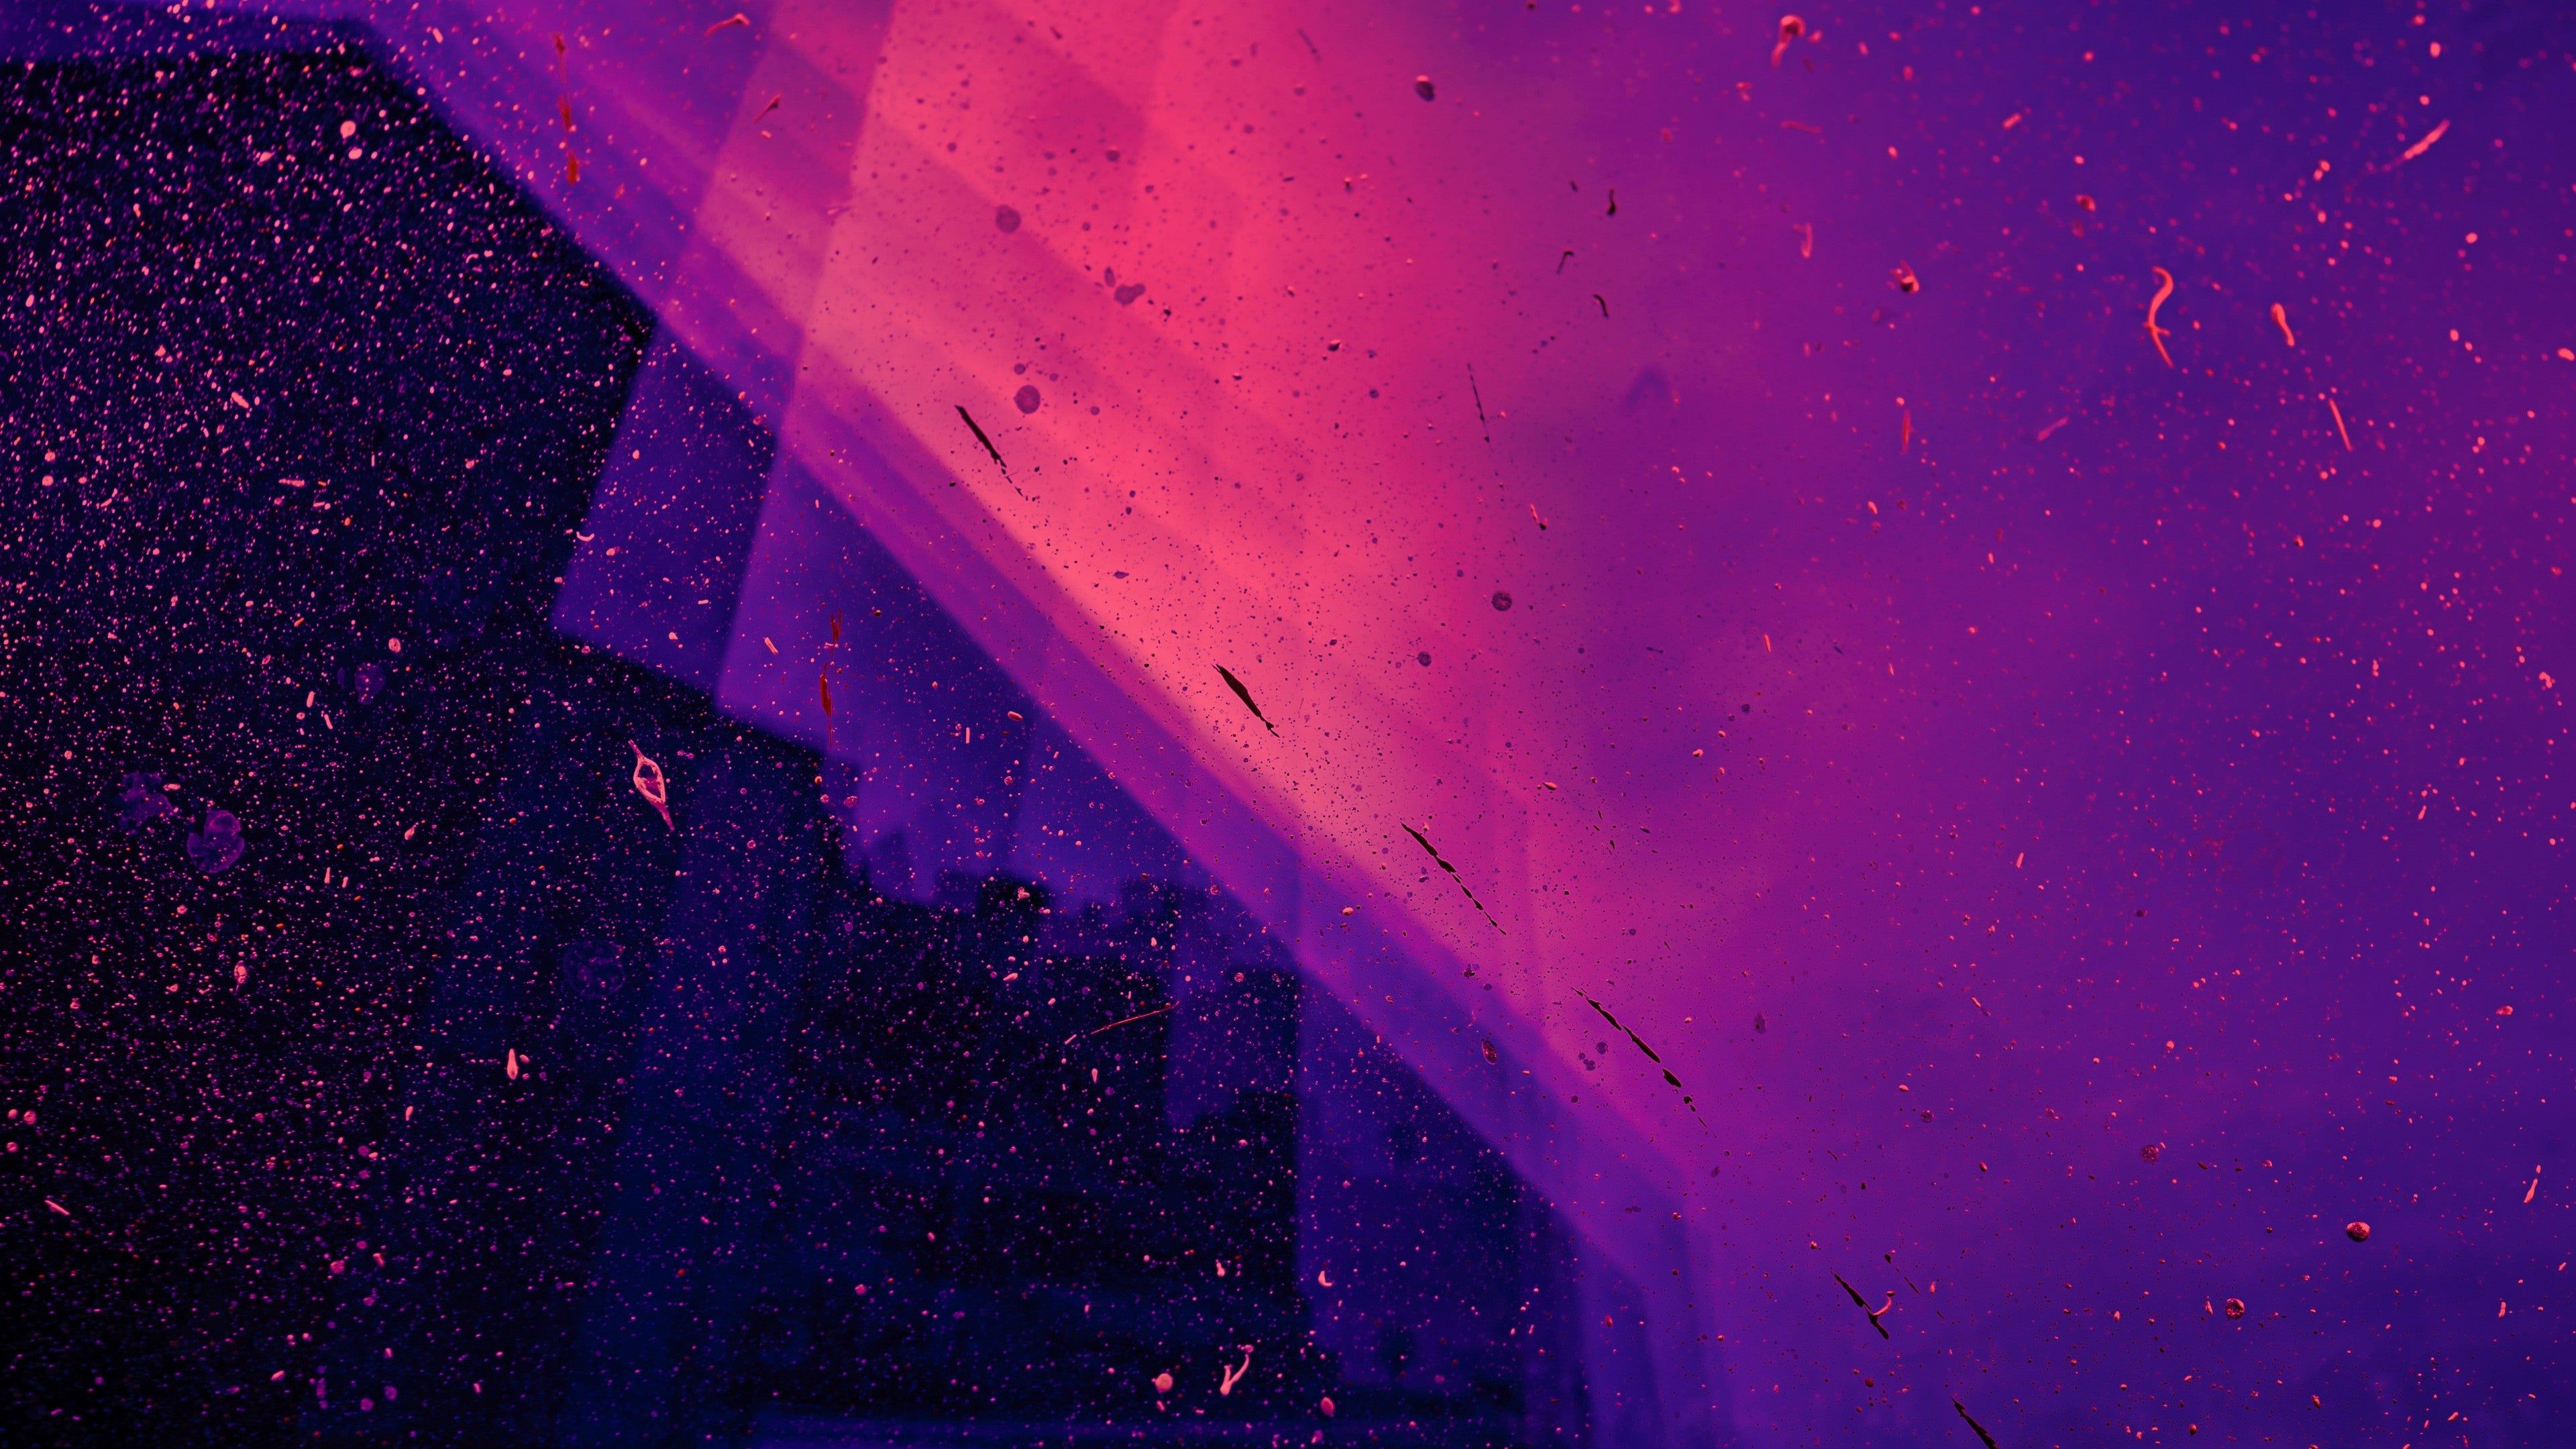 Bộ sưu tập Purple Neon 4k Wallpapers độc đáo và nổi bật sẽ khiến bạn cảm thấy thích thú với những ánh sáng neon màu tím. Hãy thưởng thức những hình nền đẹp và độc đáo này và làm mới màn hình máy tính của bạn ngay hôm nay.